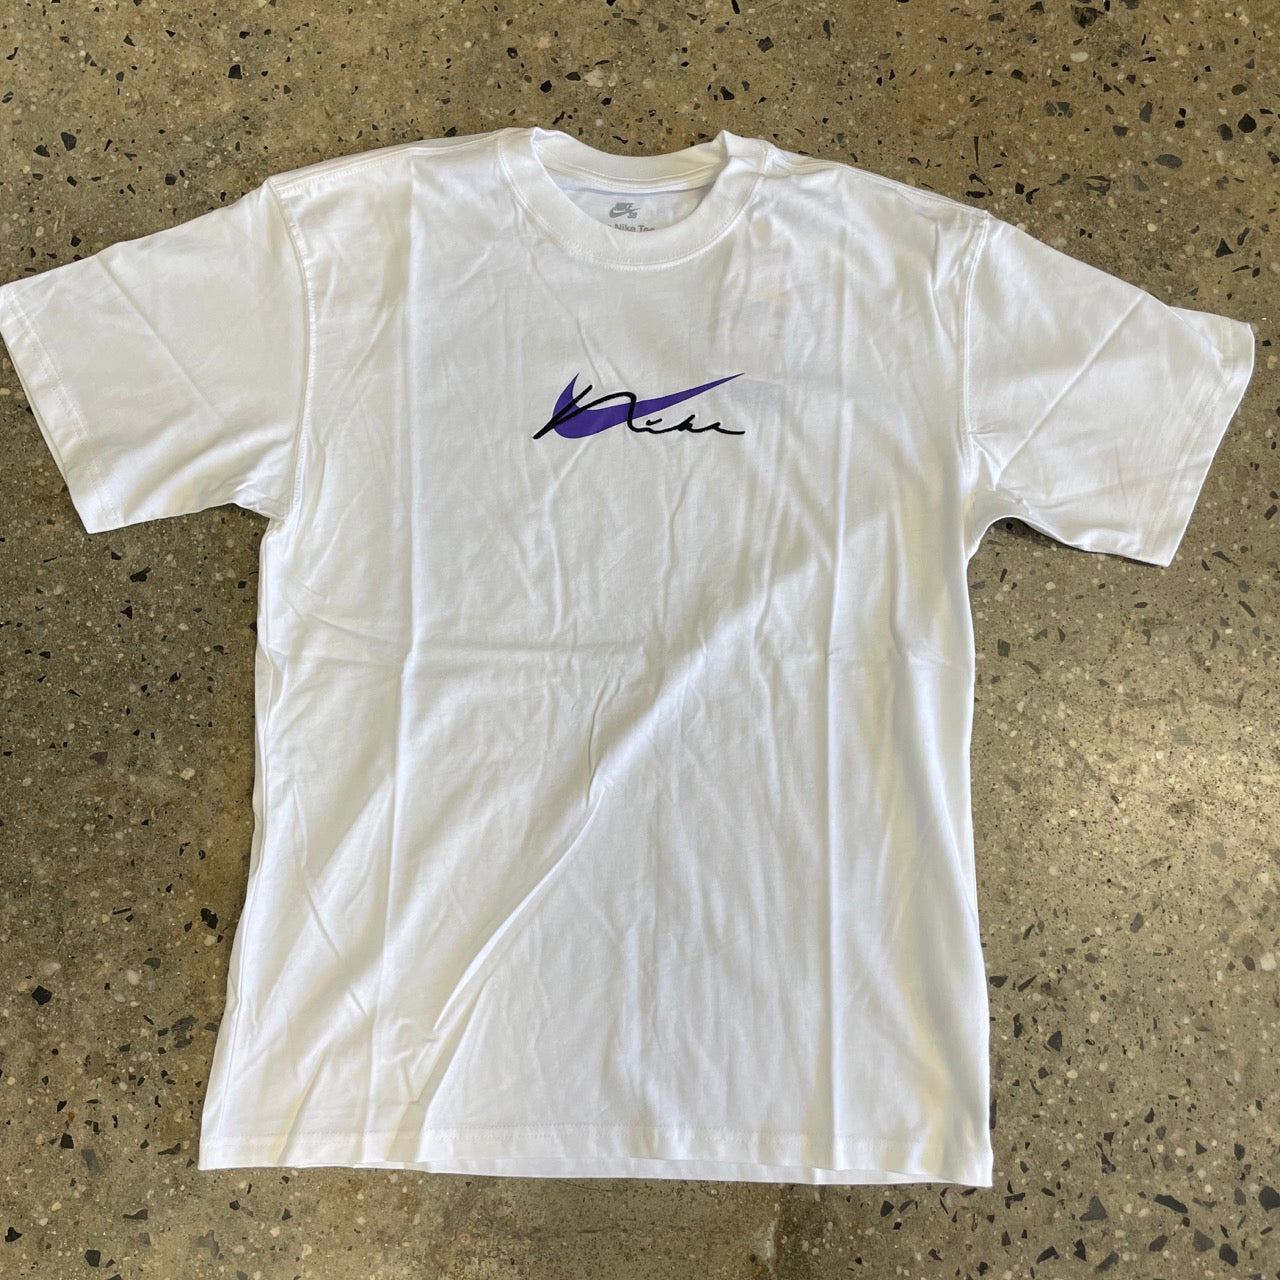 Nike SB Skate T-Shirt - White - Labor Skateboard Shop